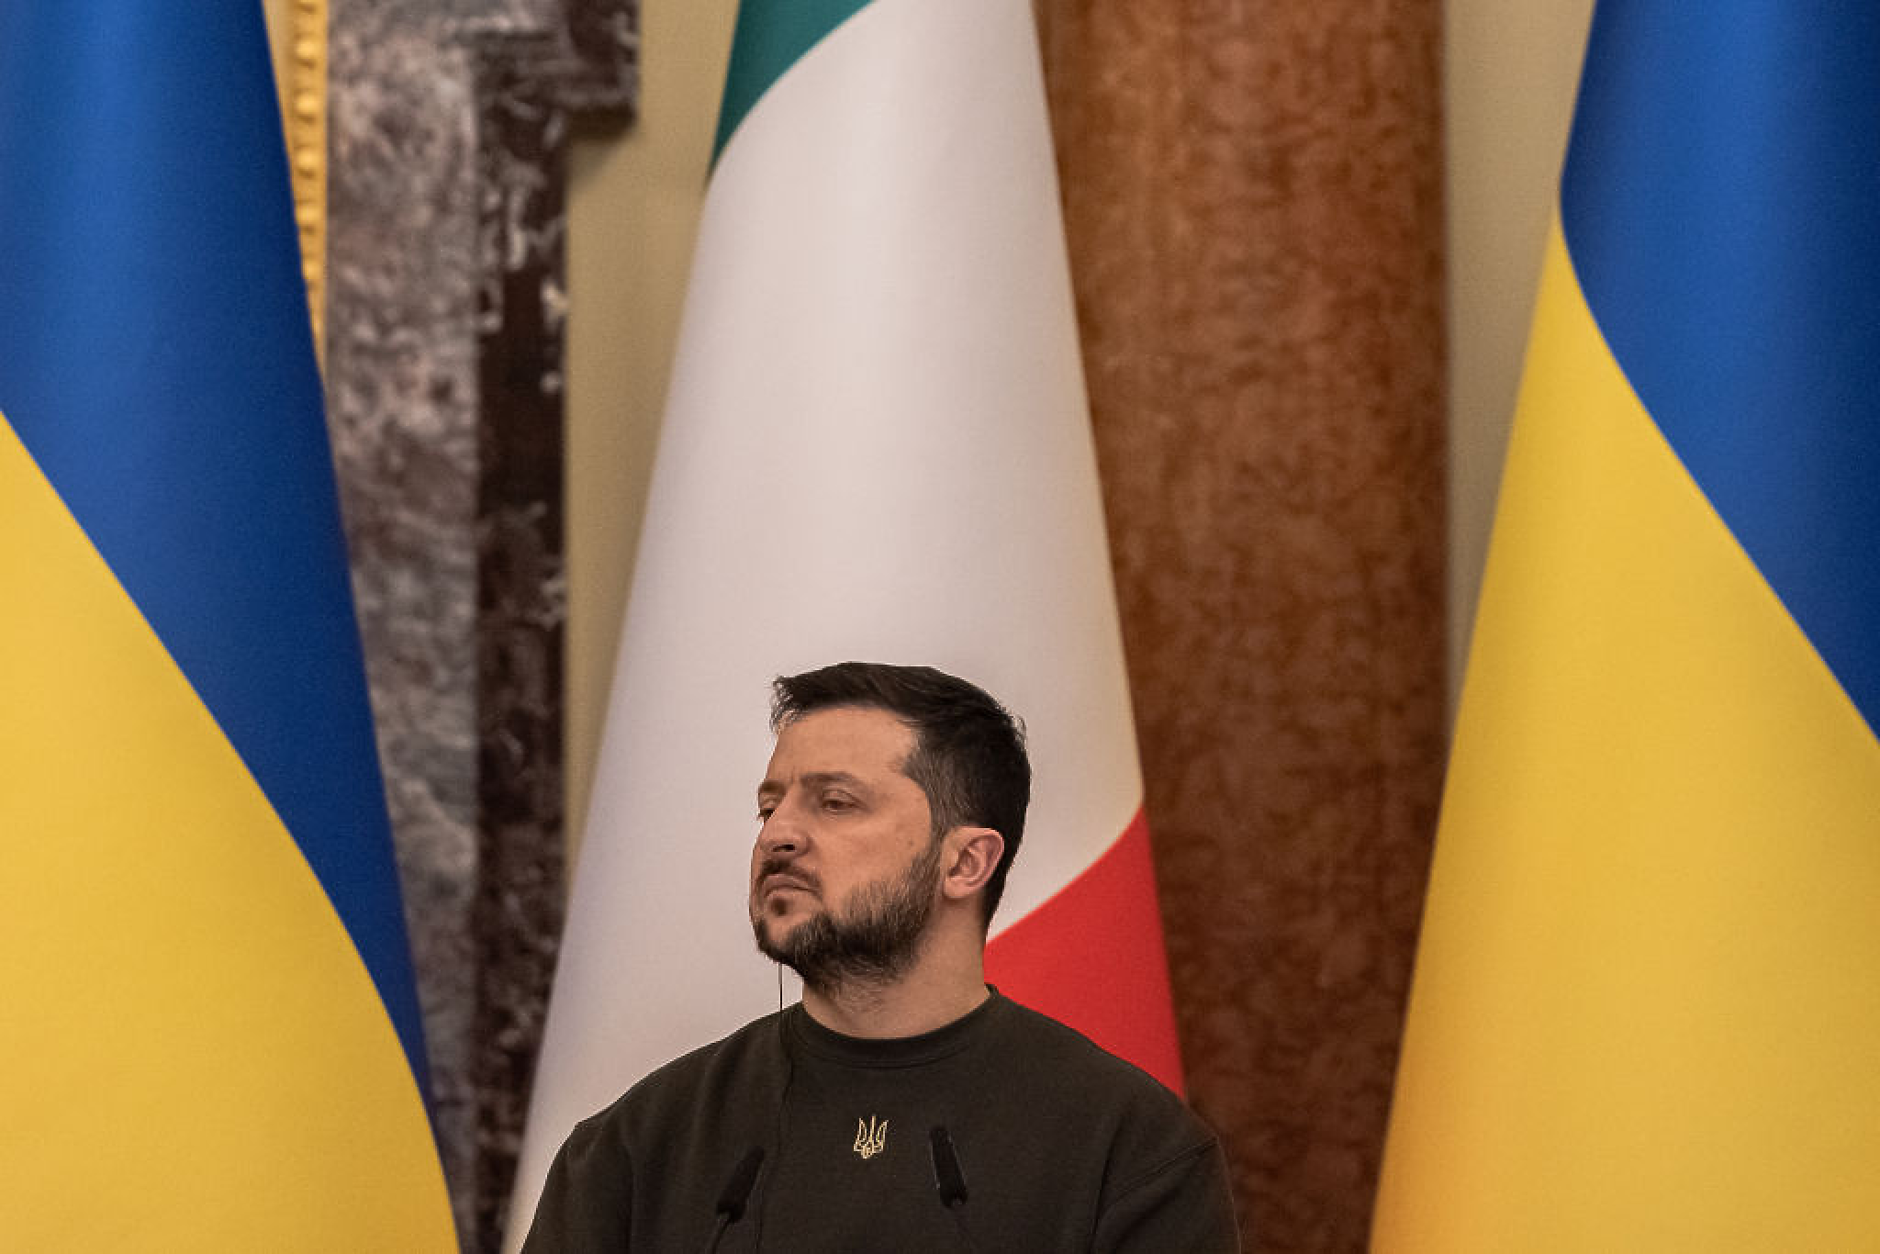 Украйна и Италия подписаха споразумение в сферата на сигурността